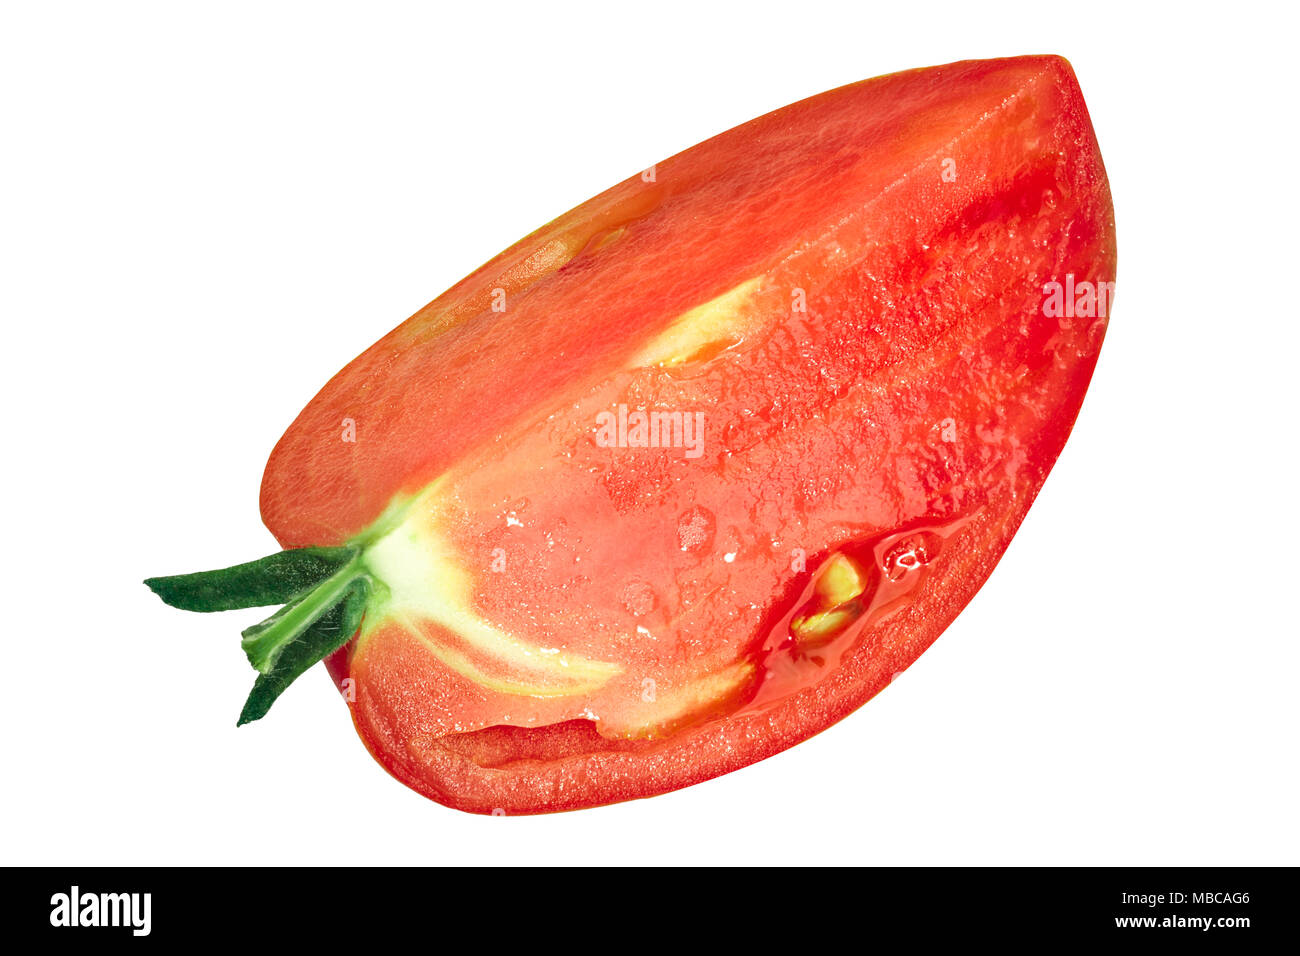 Slice or quarter of oxheart Cuor di bue tomato, top view Stock Photo